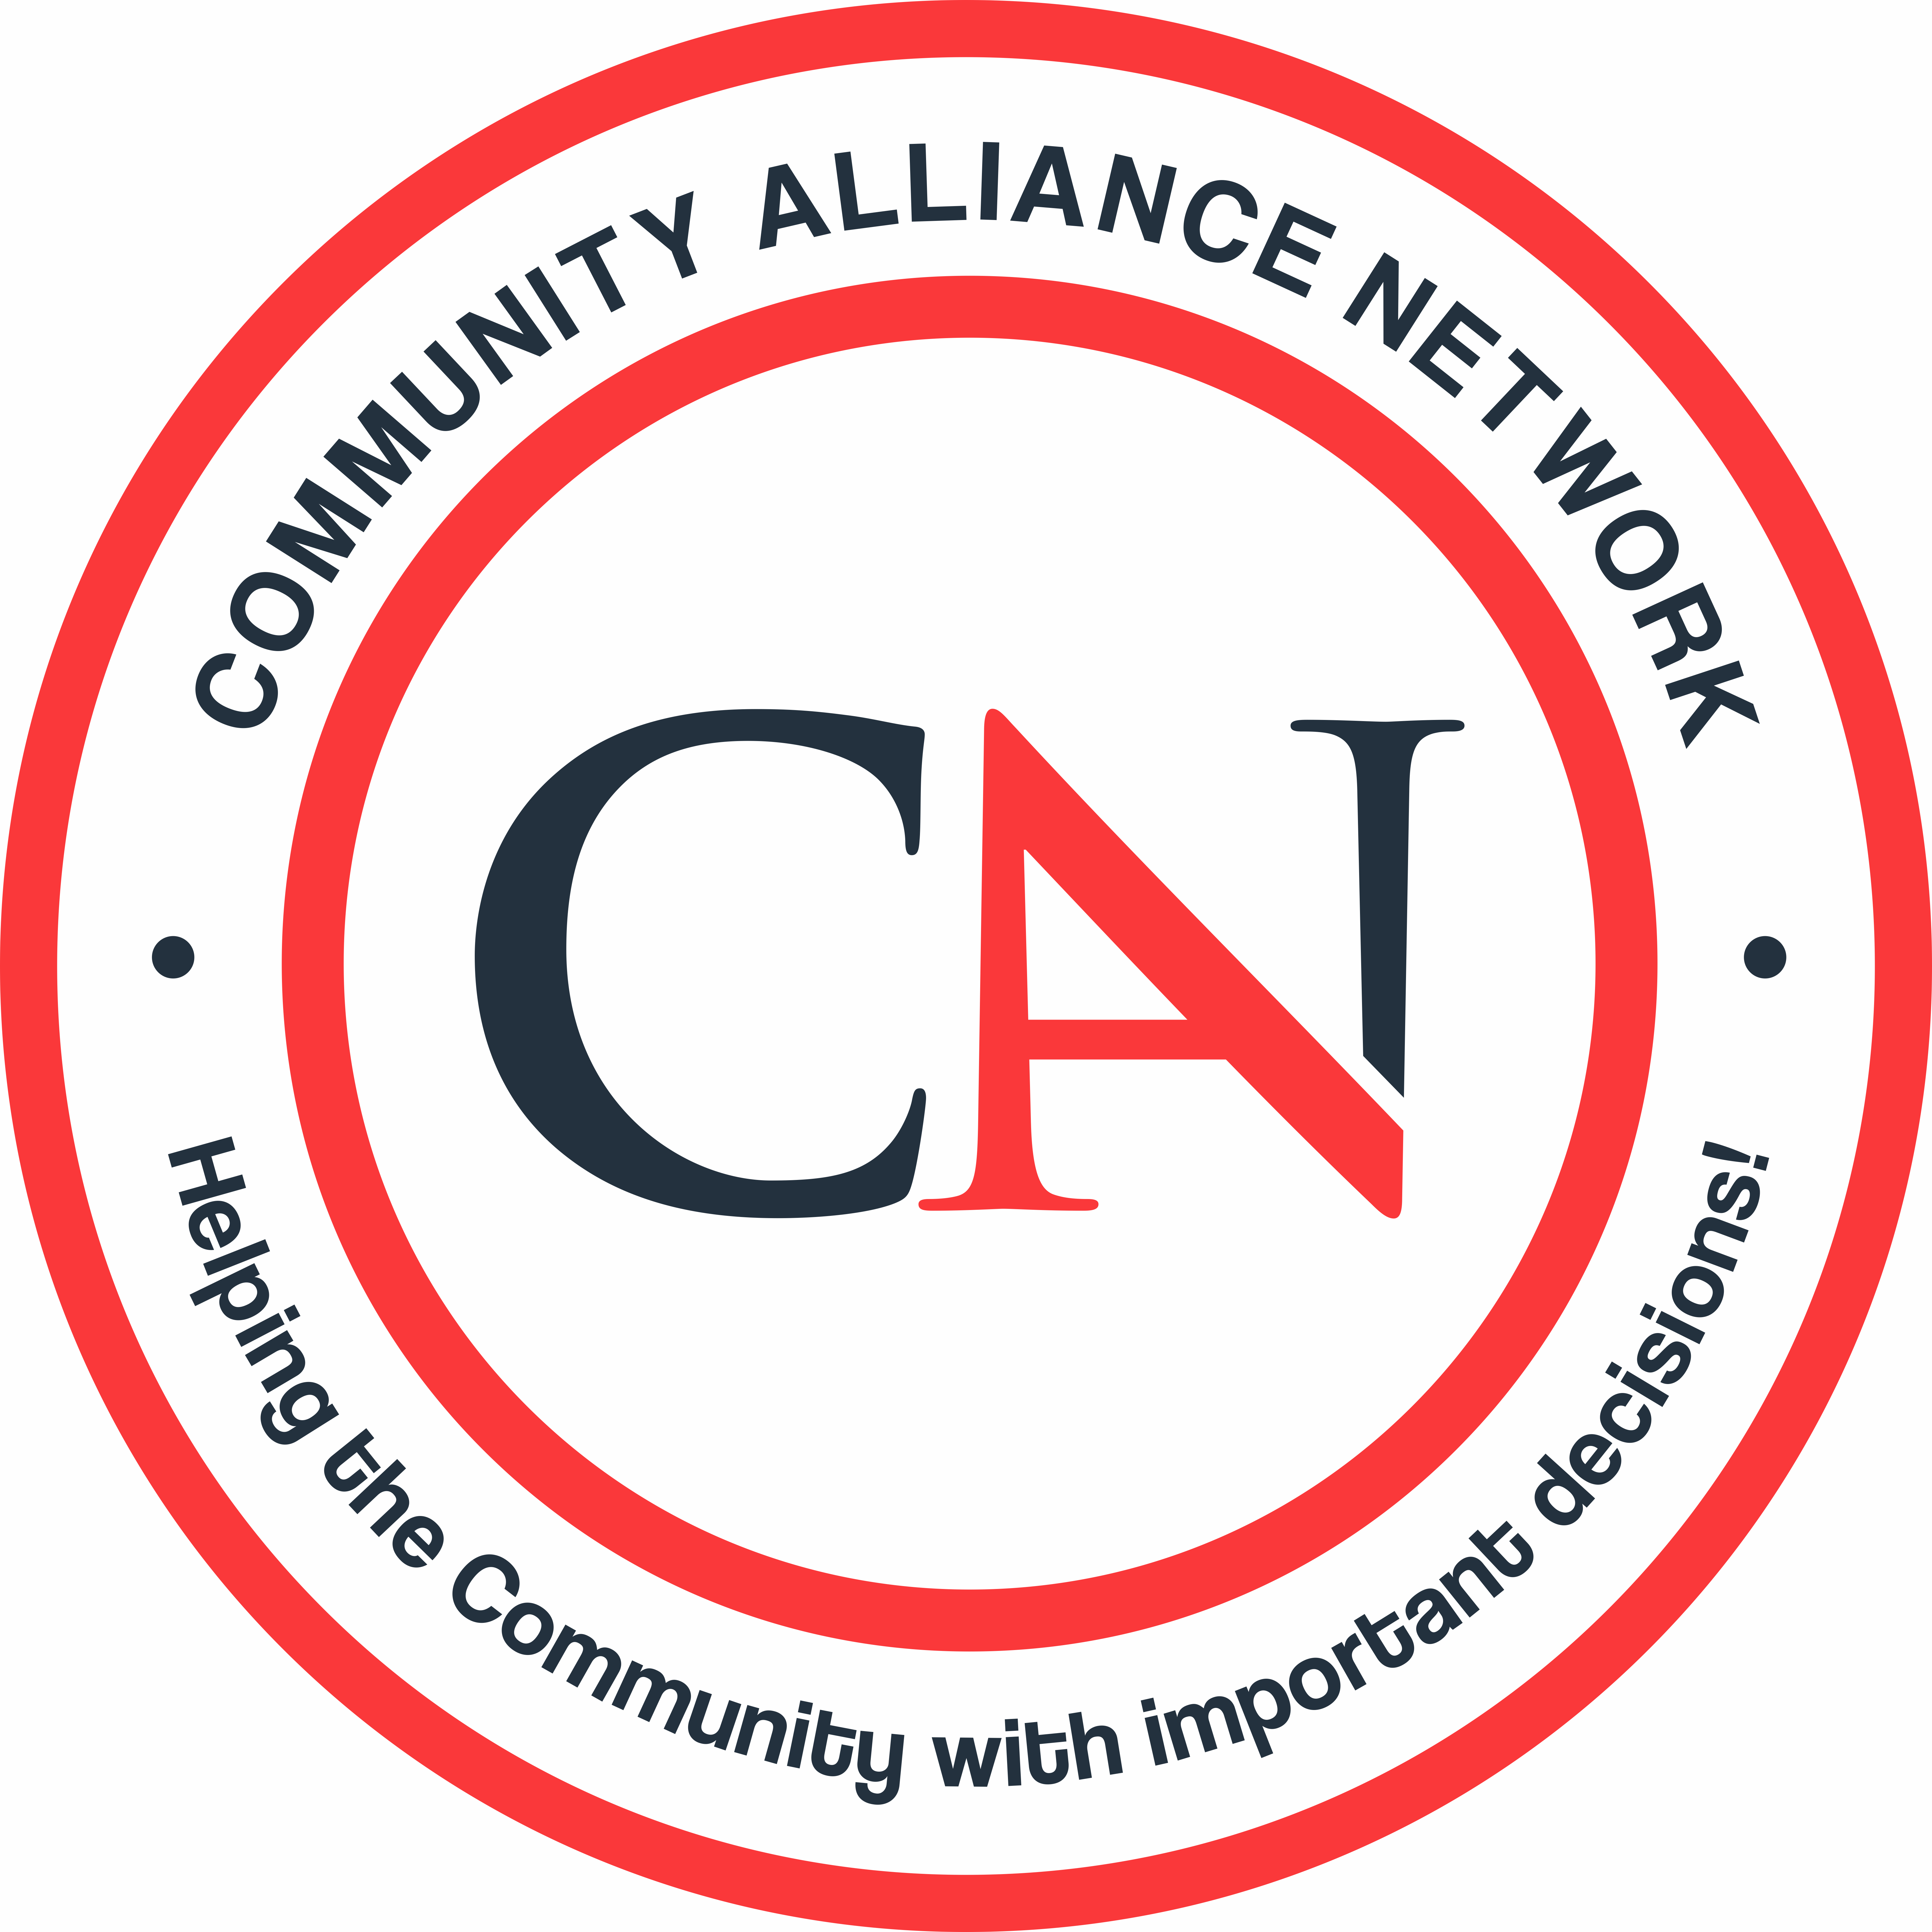 Community Alliance logo image